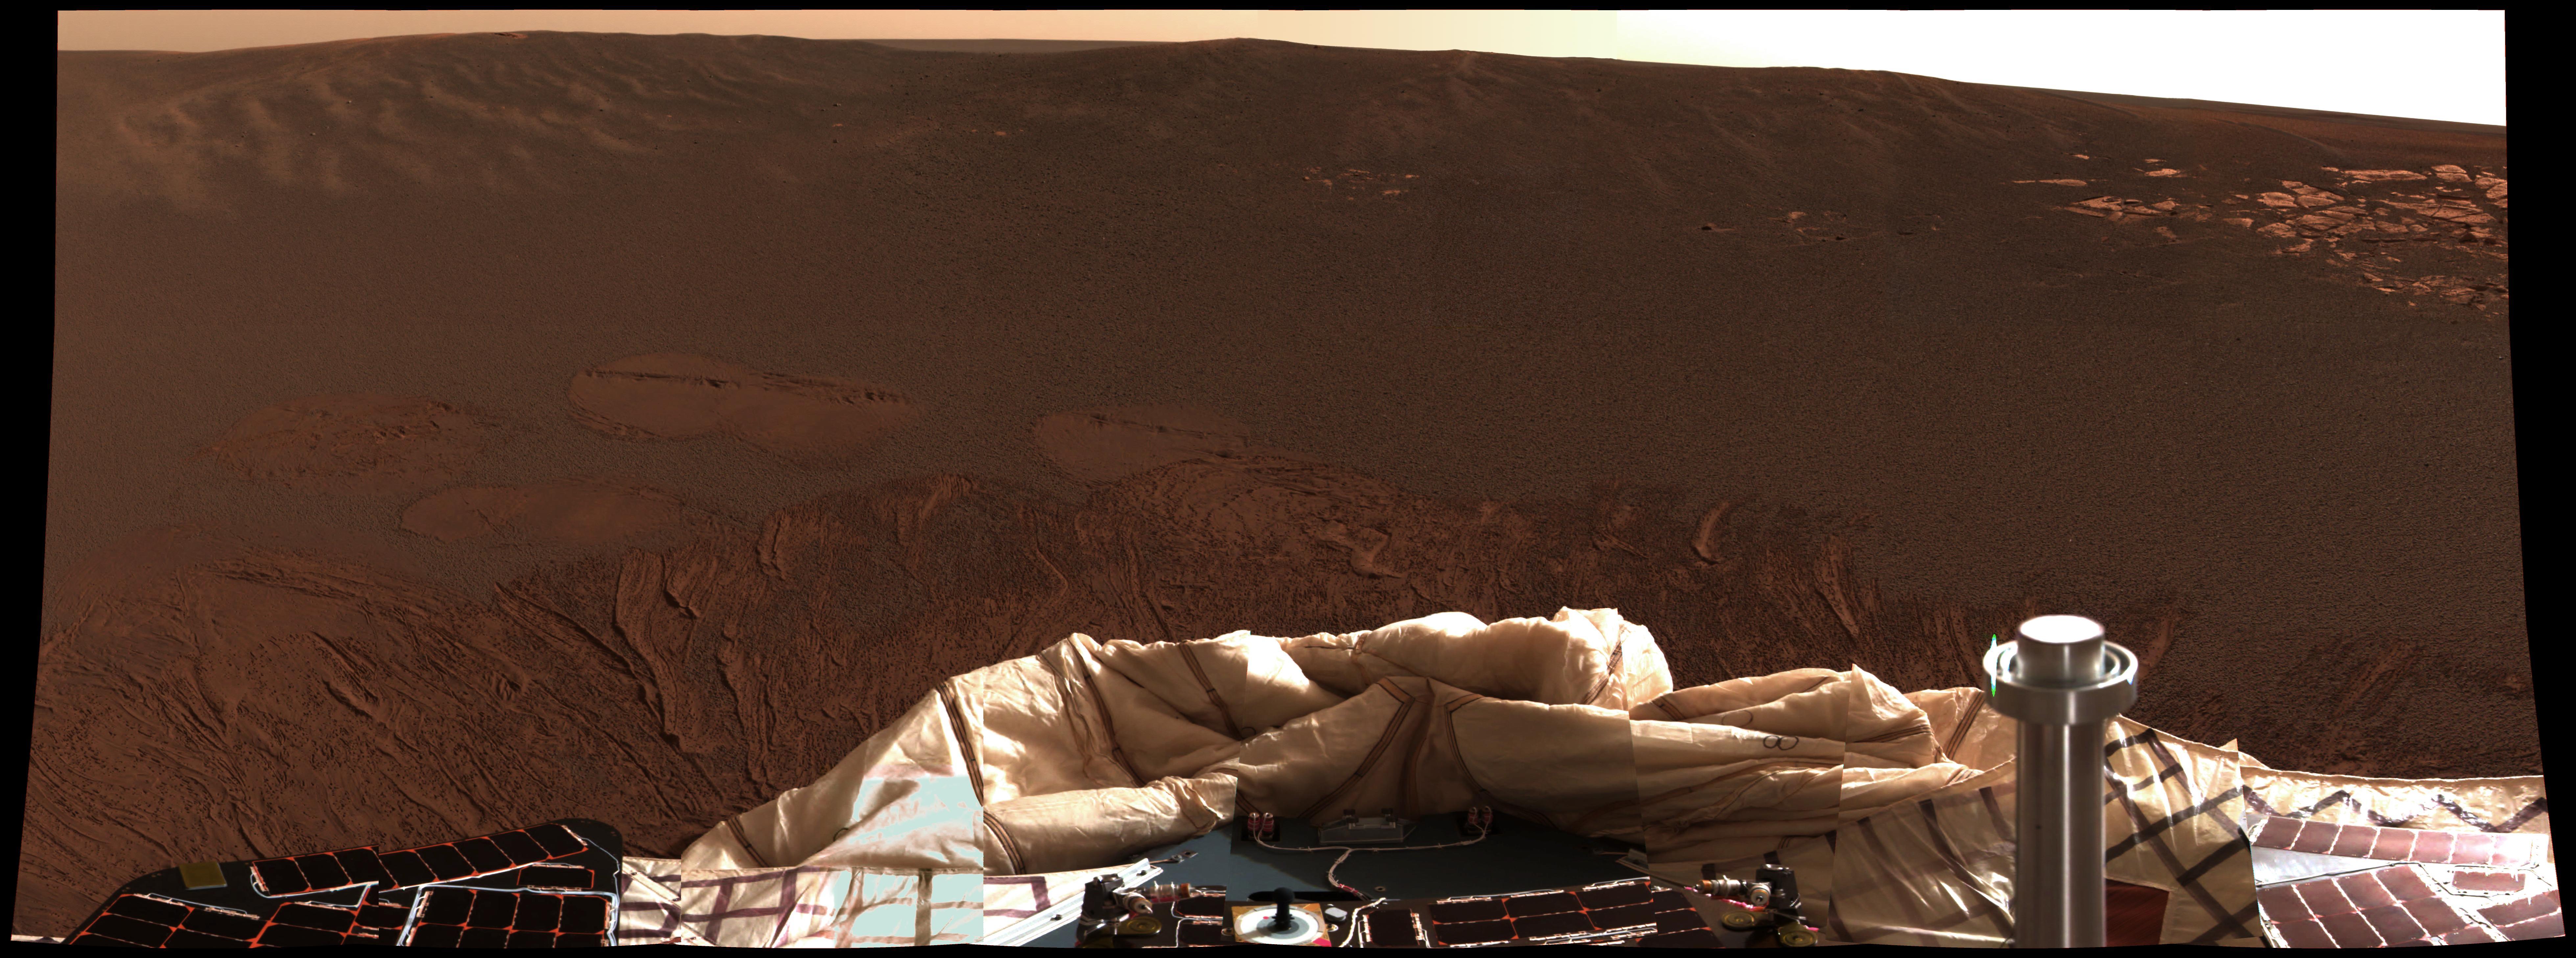 Imagen de Marte tomada por el Opportunity. Foto: NASA